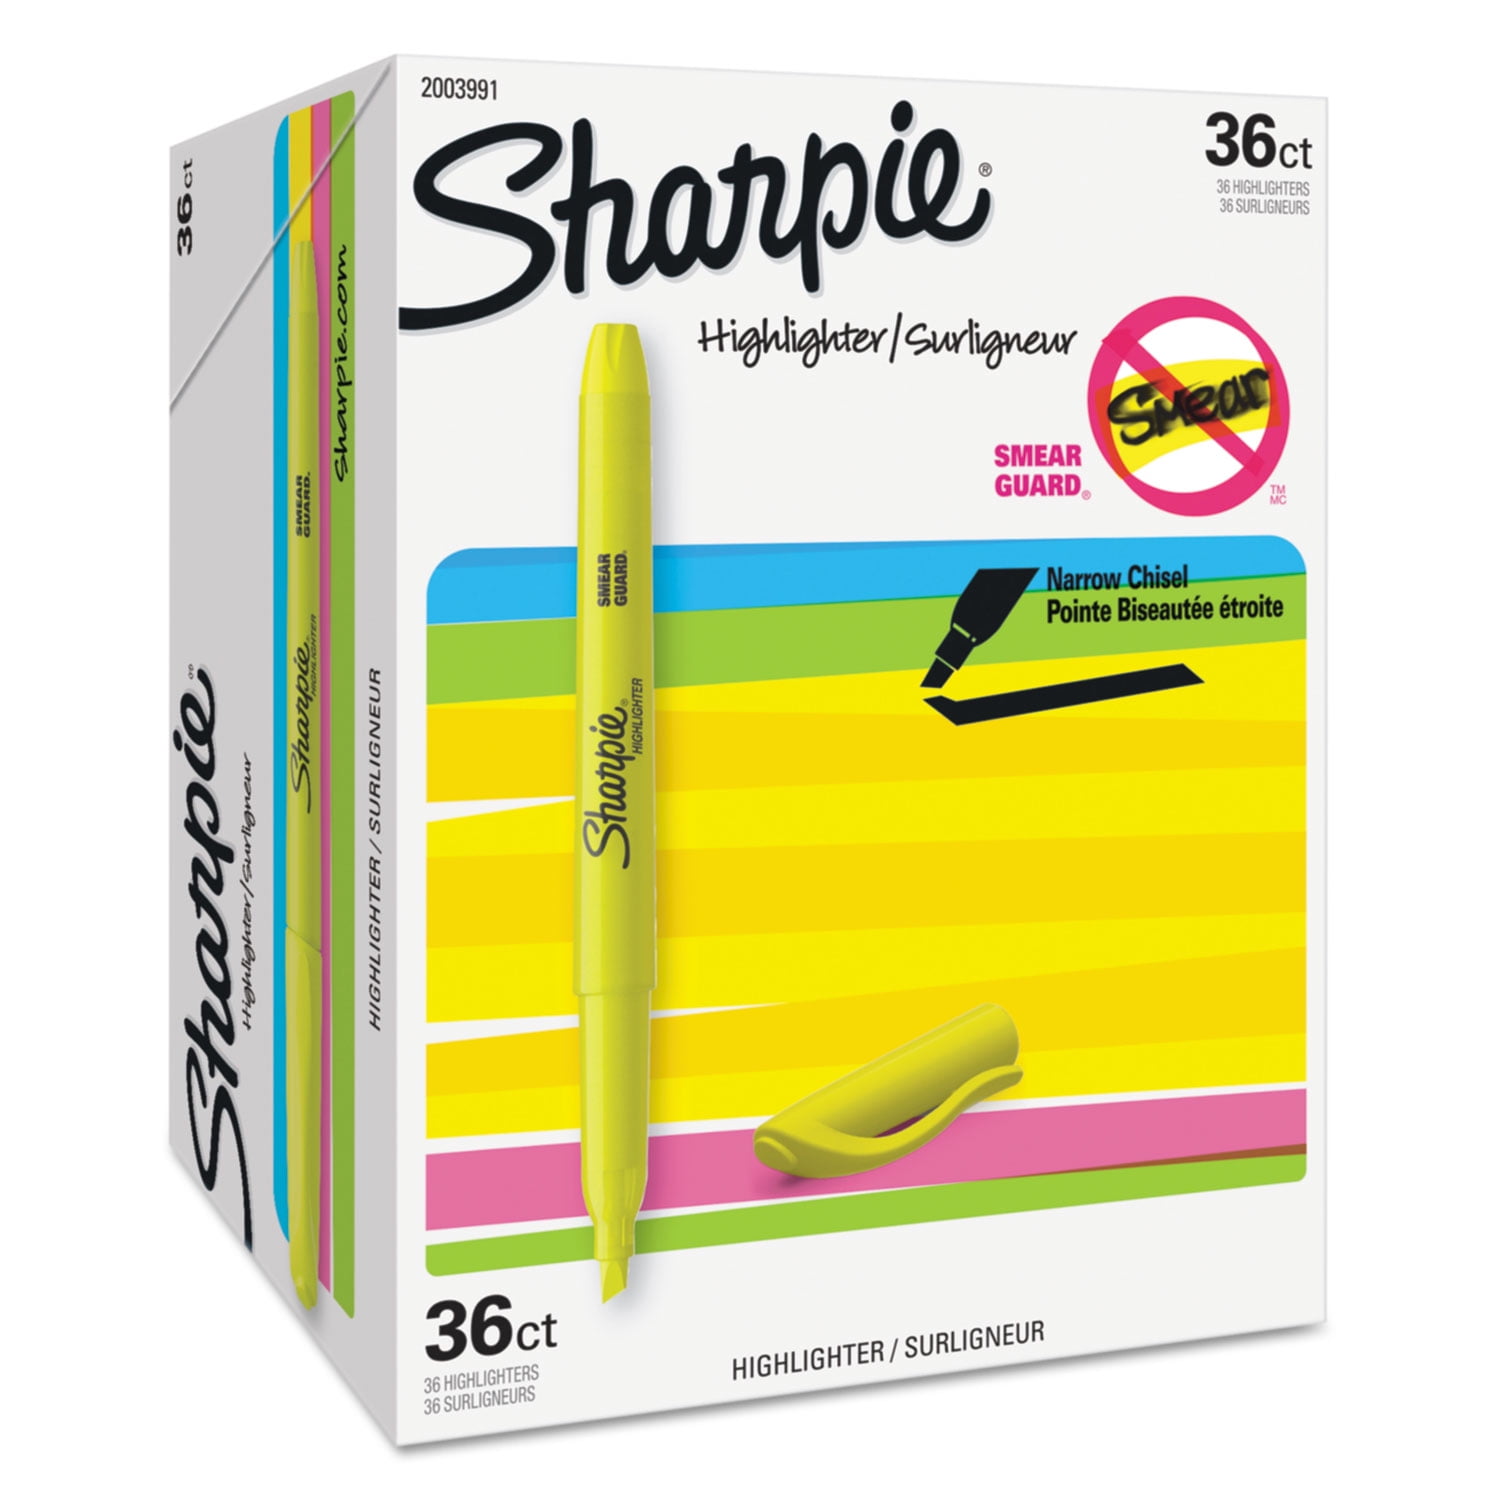 Sharpie® Gel Stick Yellow Highlighter, 2 Pack - Harris Teeter